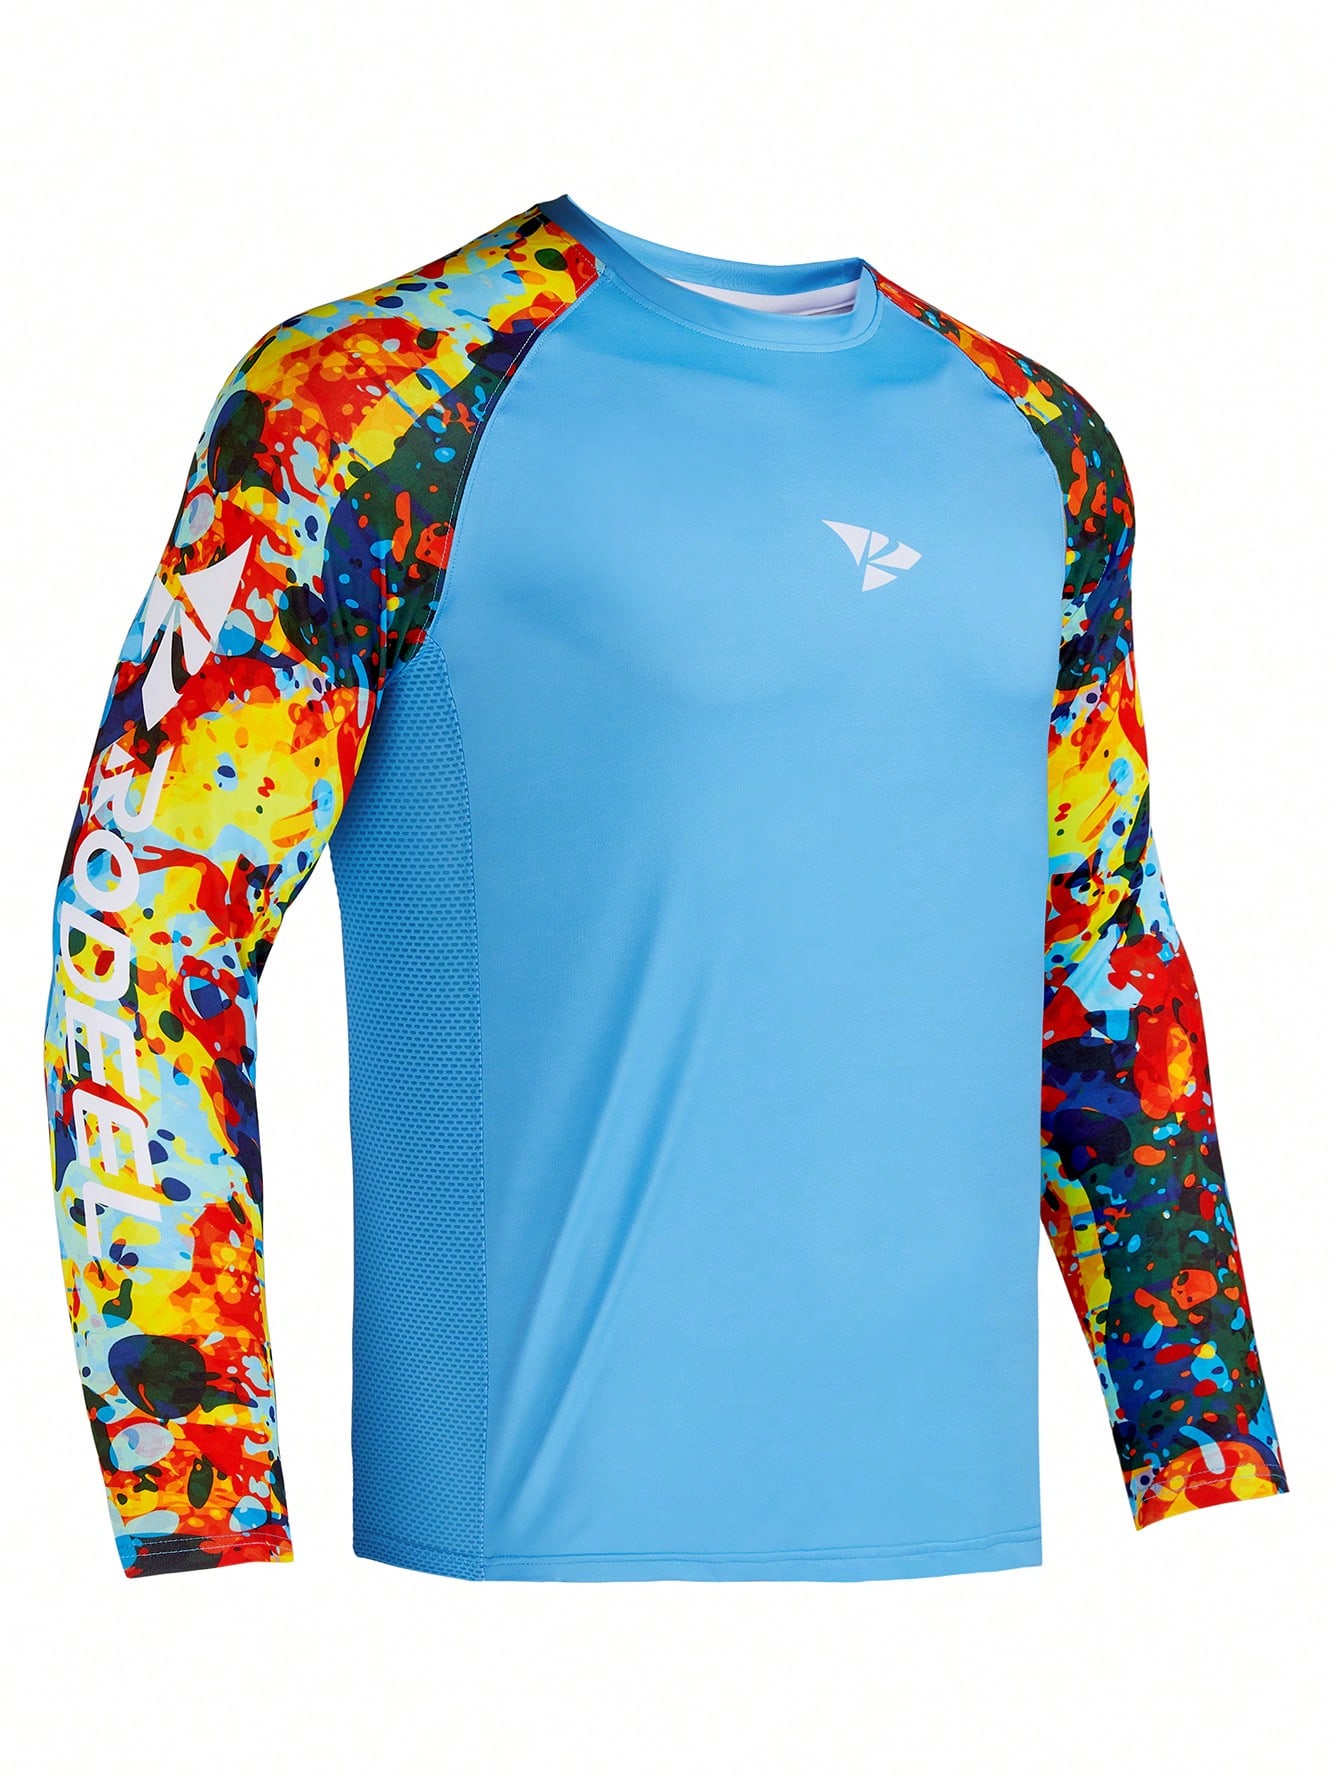 RODEEL Мужская рубашка с защитой от солнца, голубые одежда daiwa футболка для рыбалки мужская дышащая быстросохнущая одежда для рыбалки daiwa летняя спортивная рубашка с коротким рукавом футбо